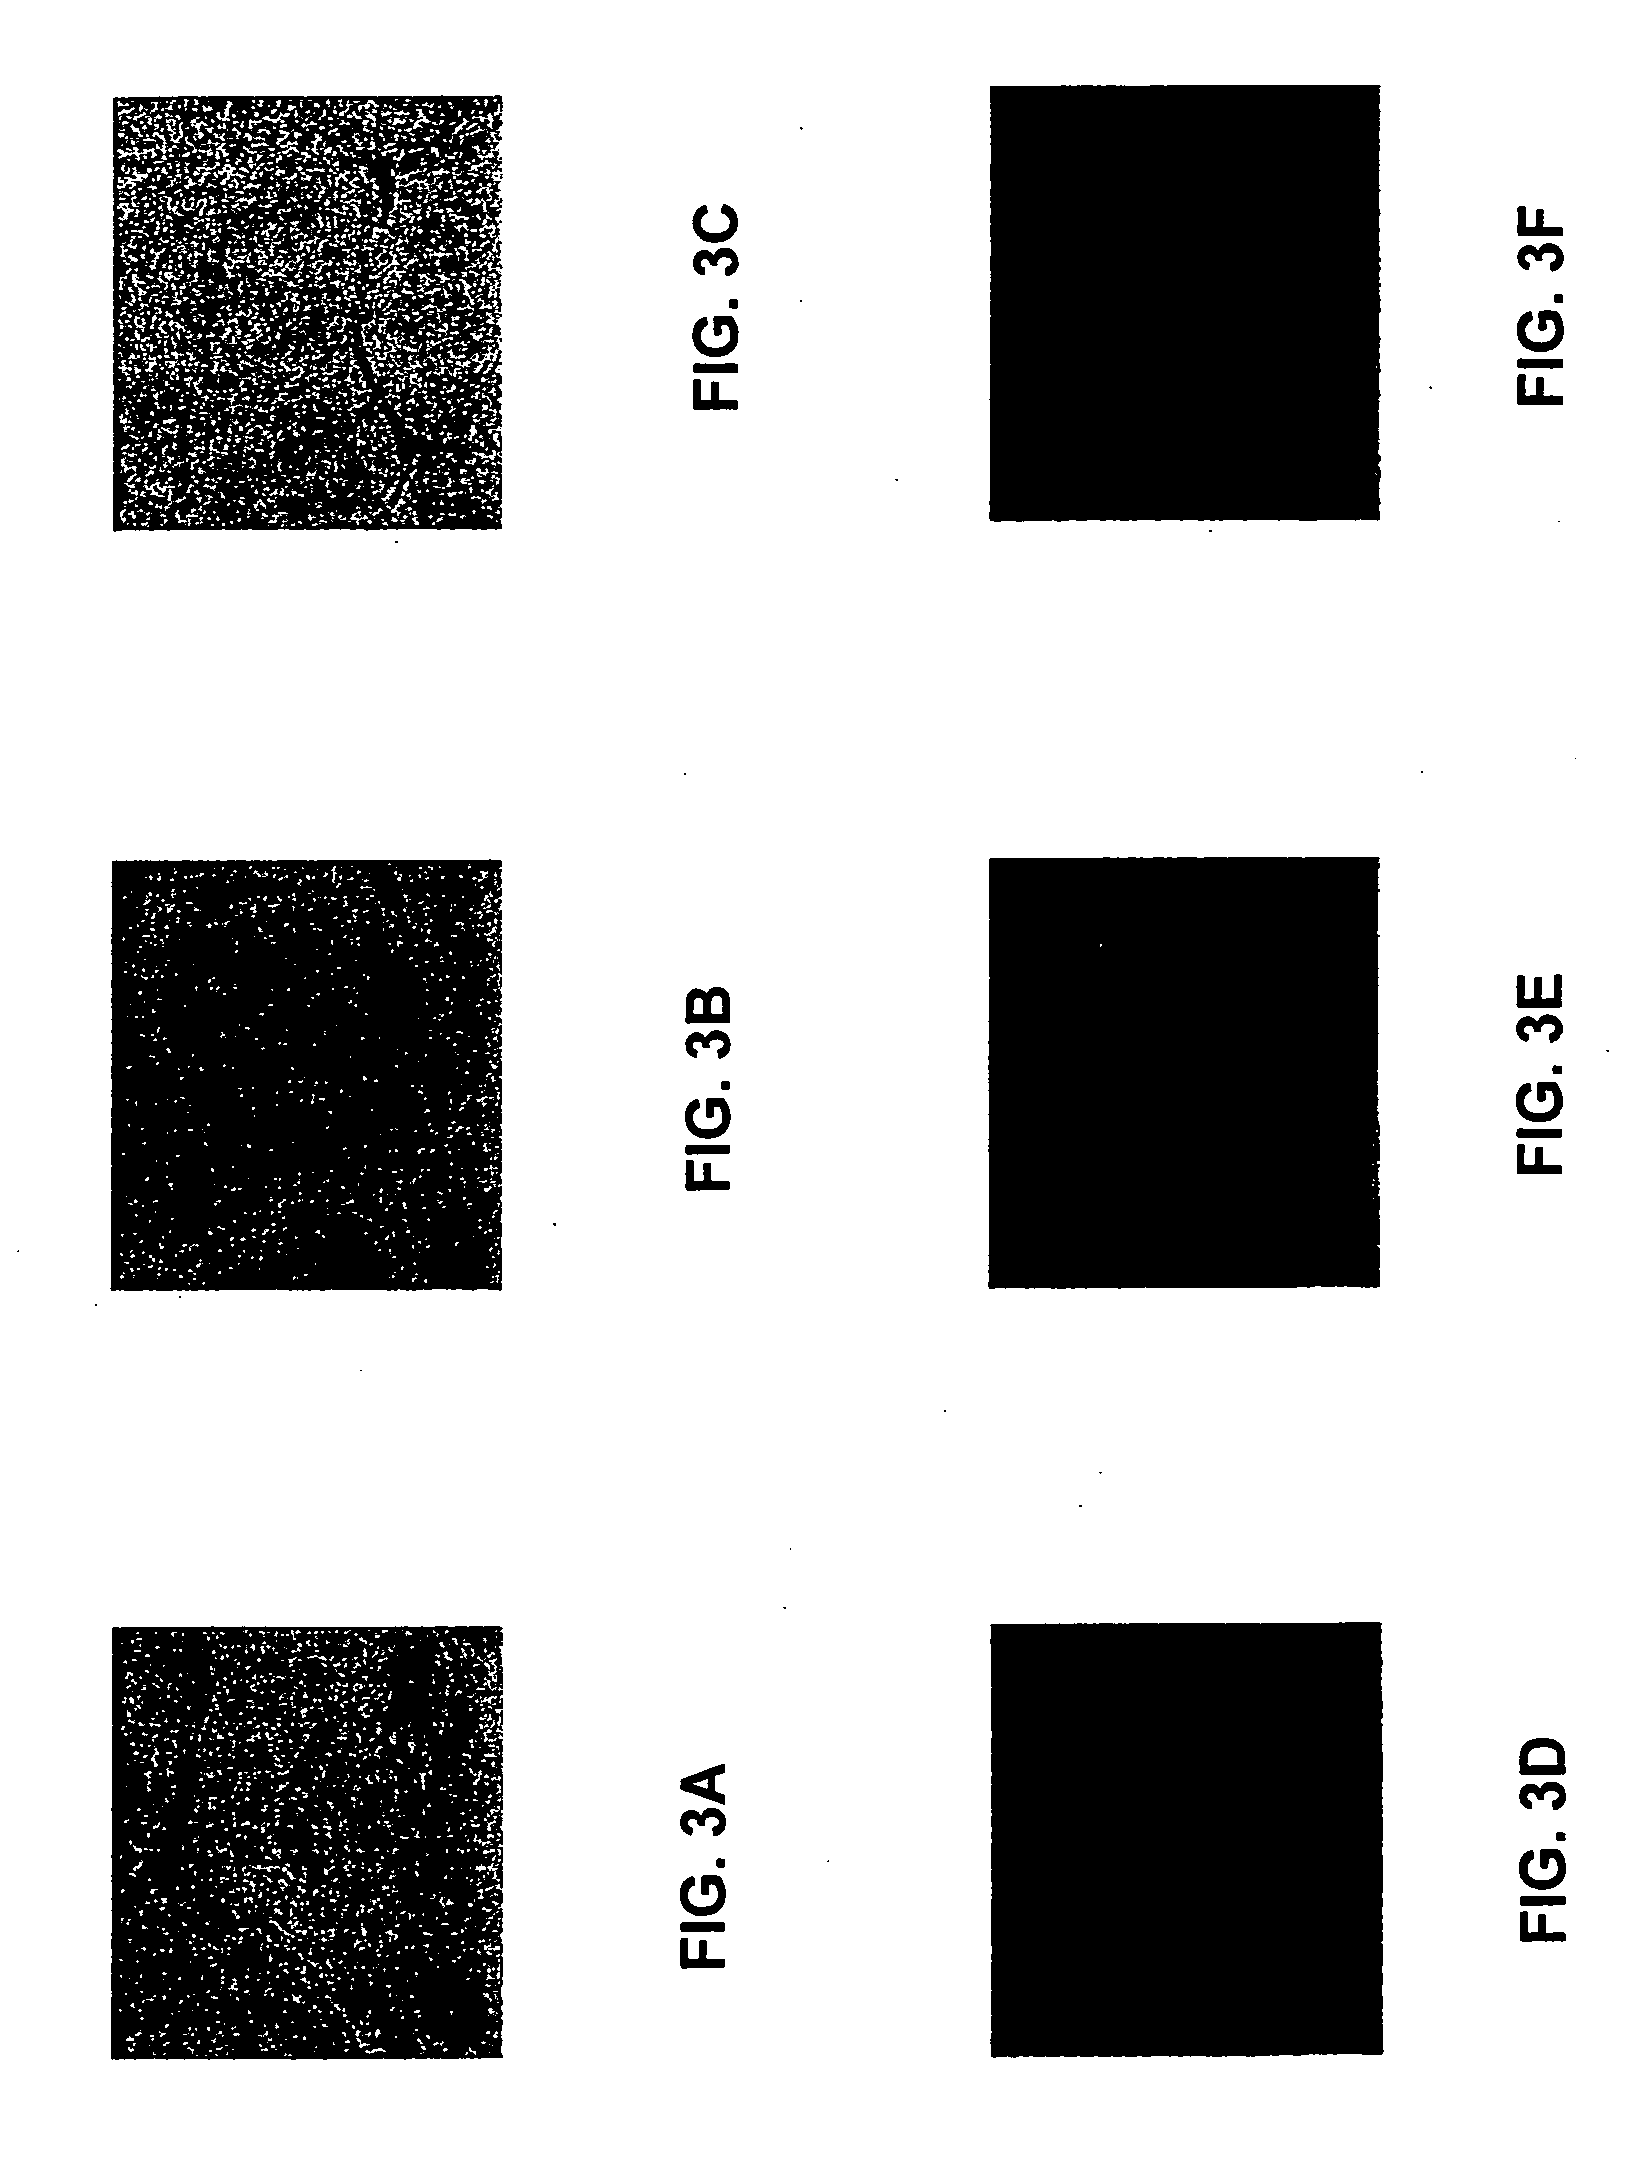 Nanoparticle conjugates